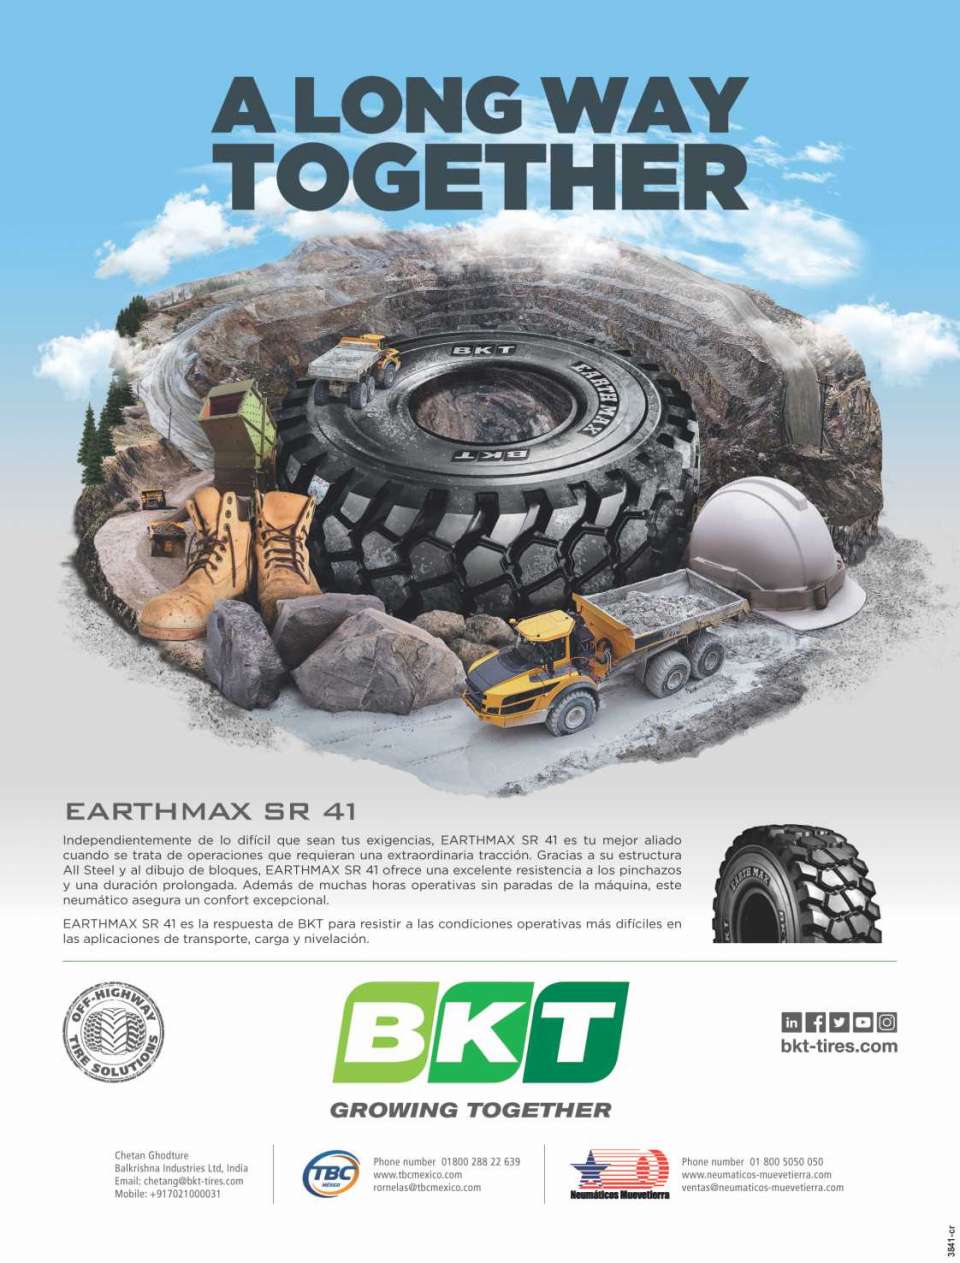 BKT incluye gamas de neumaticos especificos para la construccion y OTR. Llantas EARTHMAX SR 41 para una extraordinaria traccion y resistencia a los pinchazos.